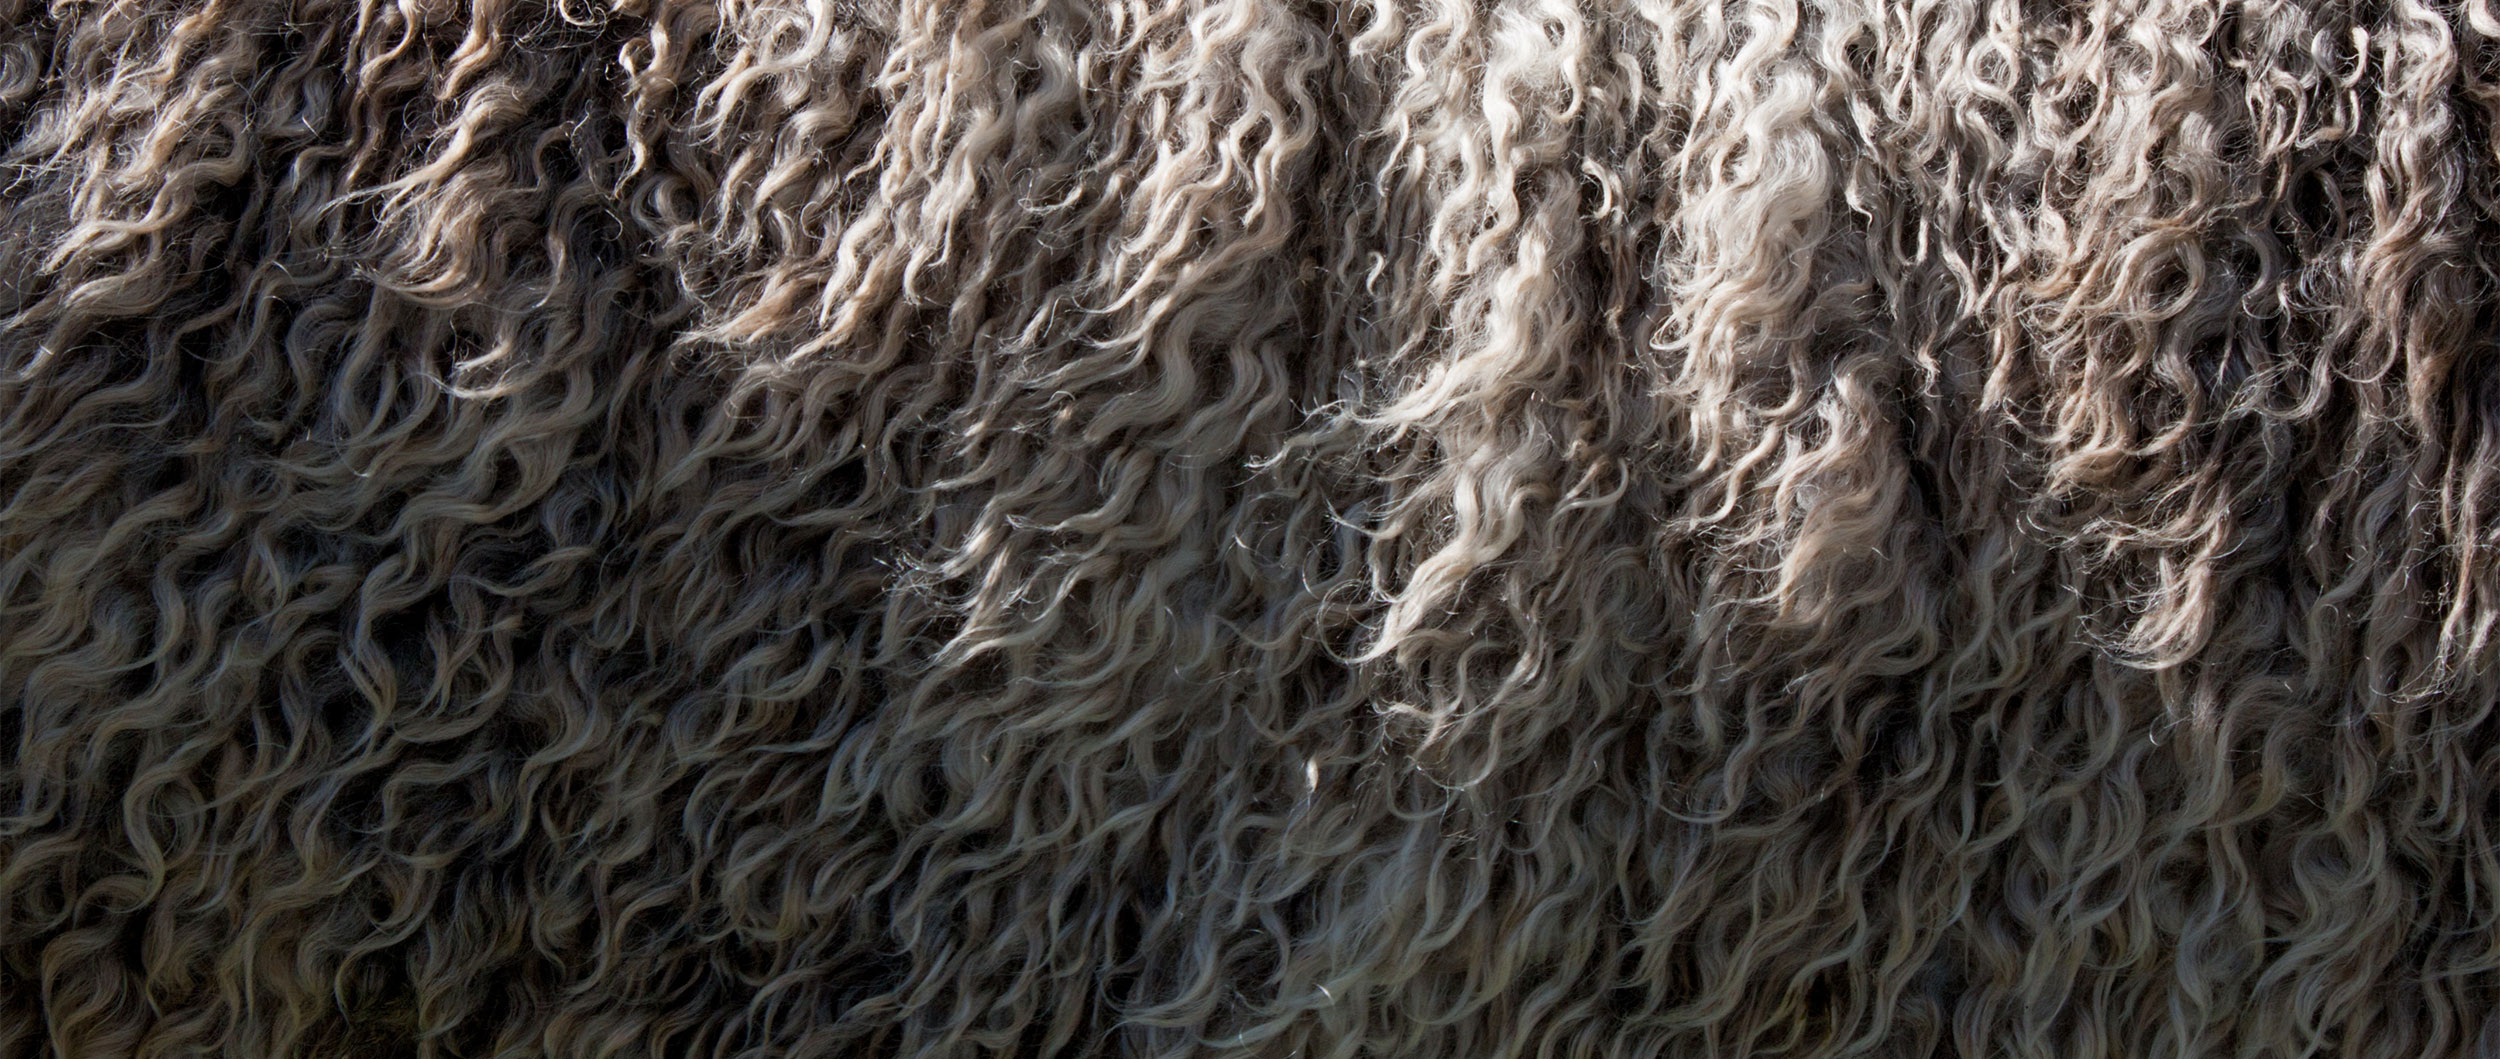 Wat is merinowol? Afbeelding van wol van het merinoschaap